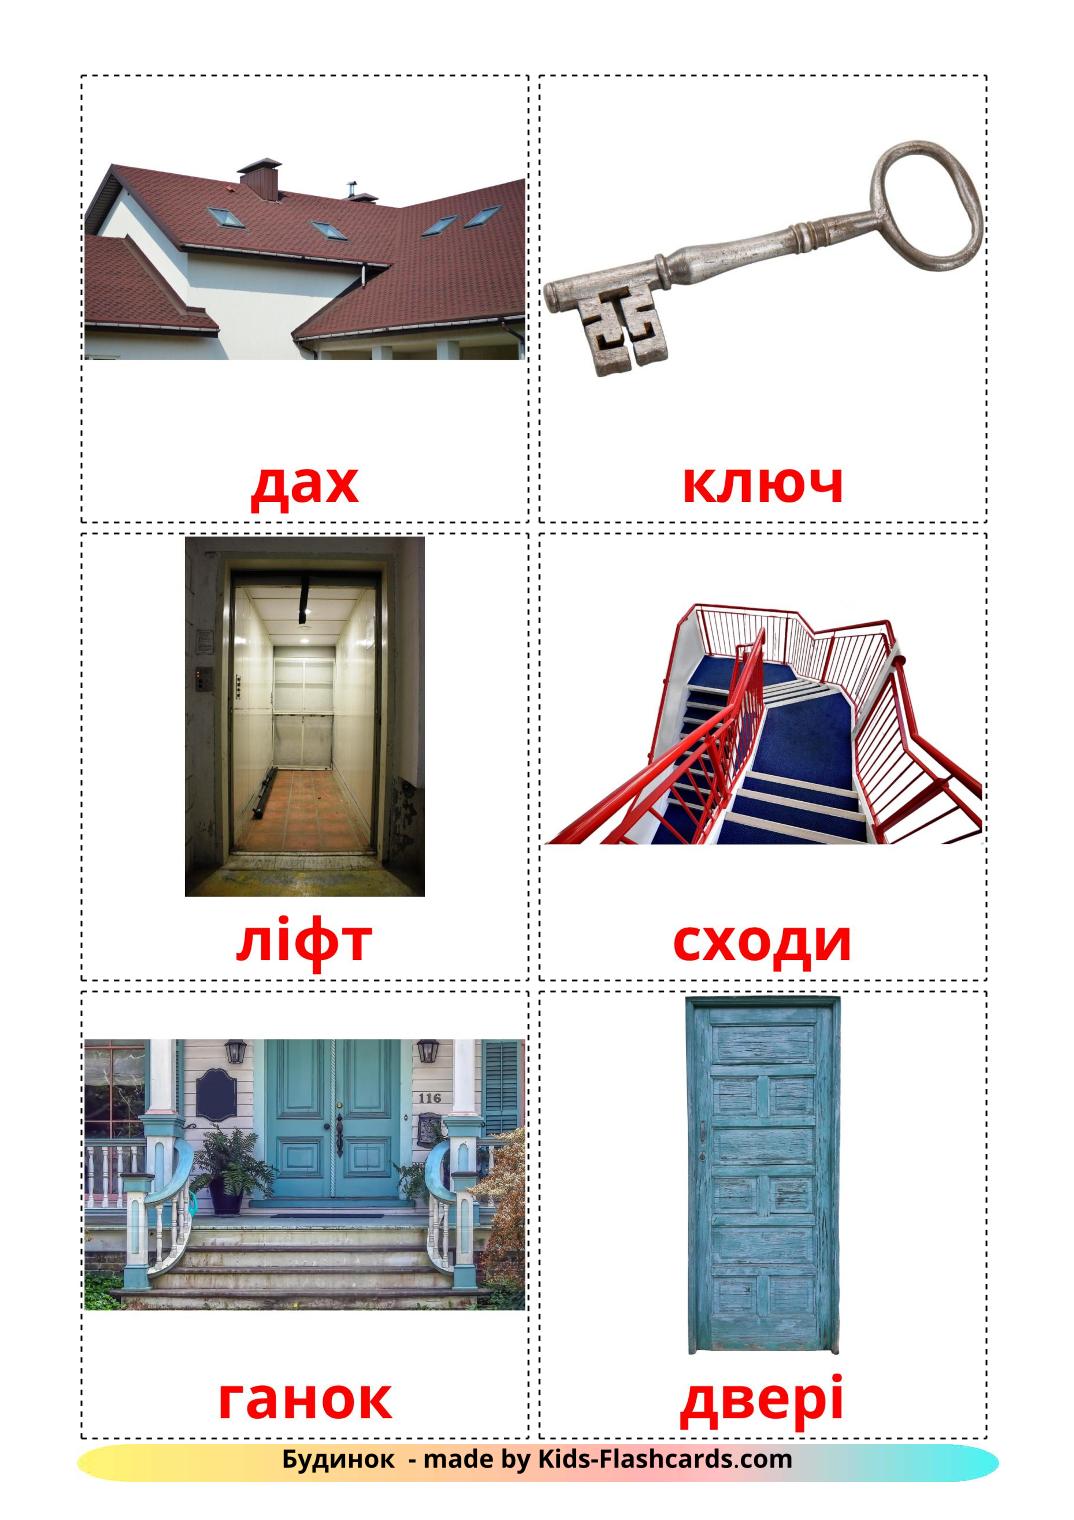 Wohnung - 25 kostenlose, druckbare Ukrainisch Flashcards 